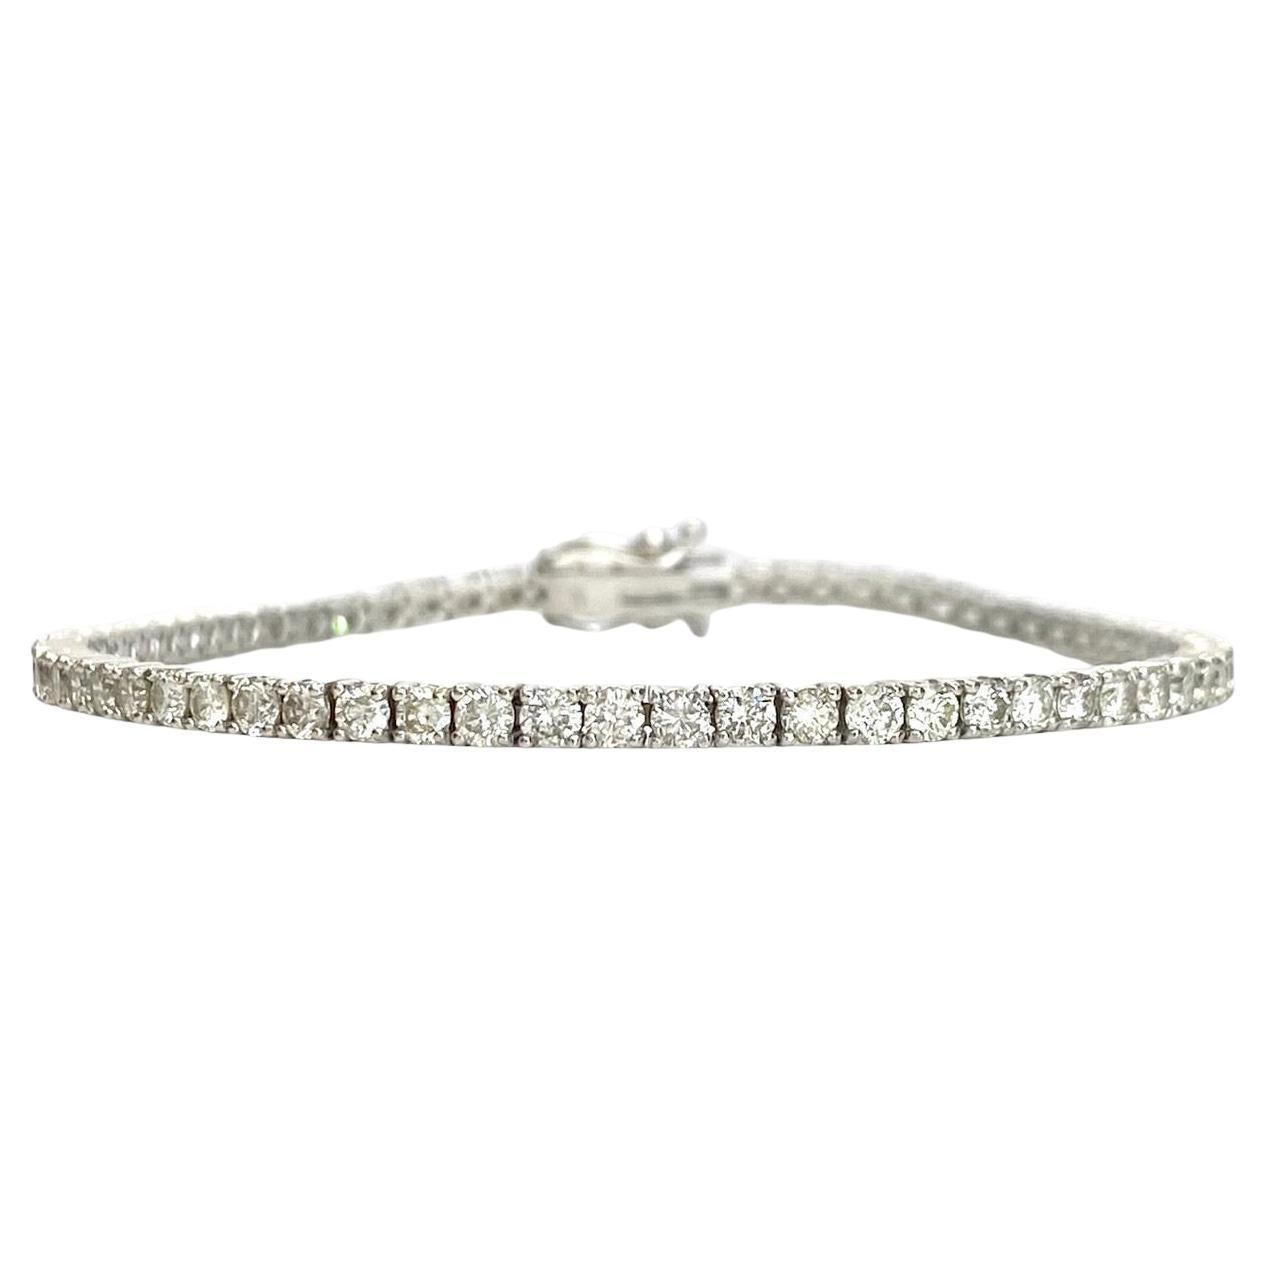 Bracelet tennis en or blanc 14 carats avec diamants pesant 3,85 carats